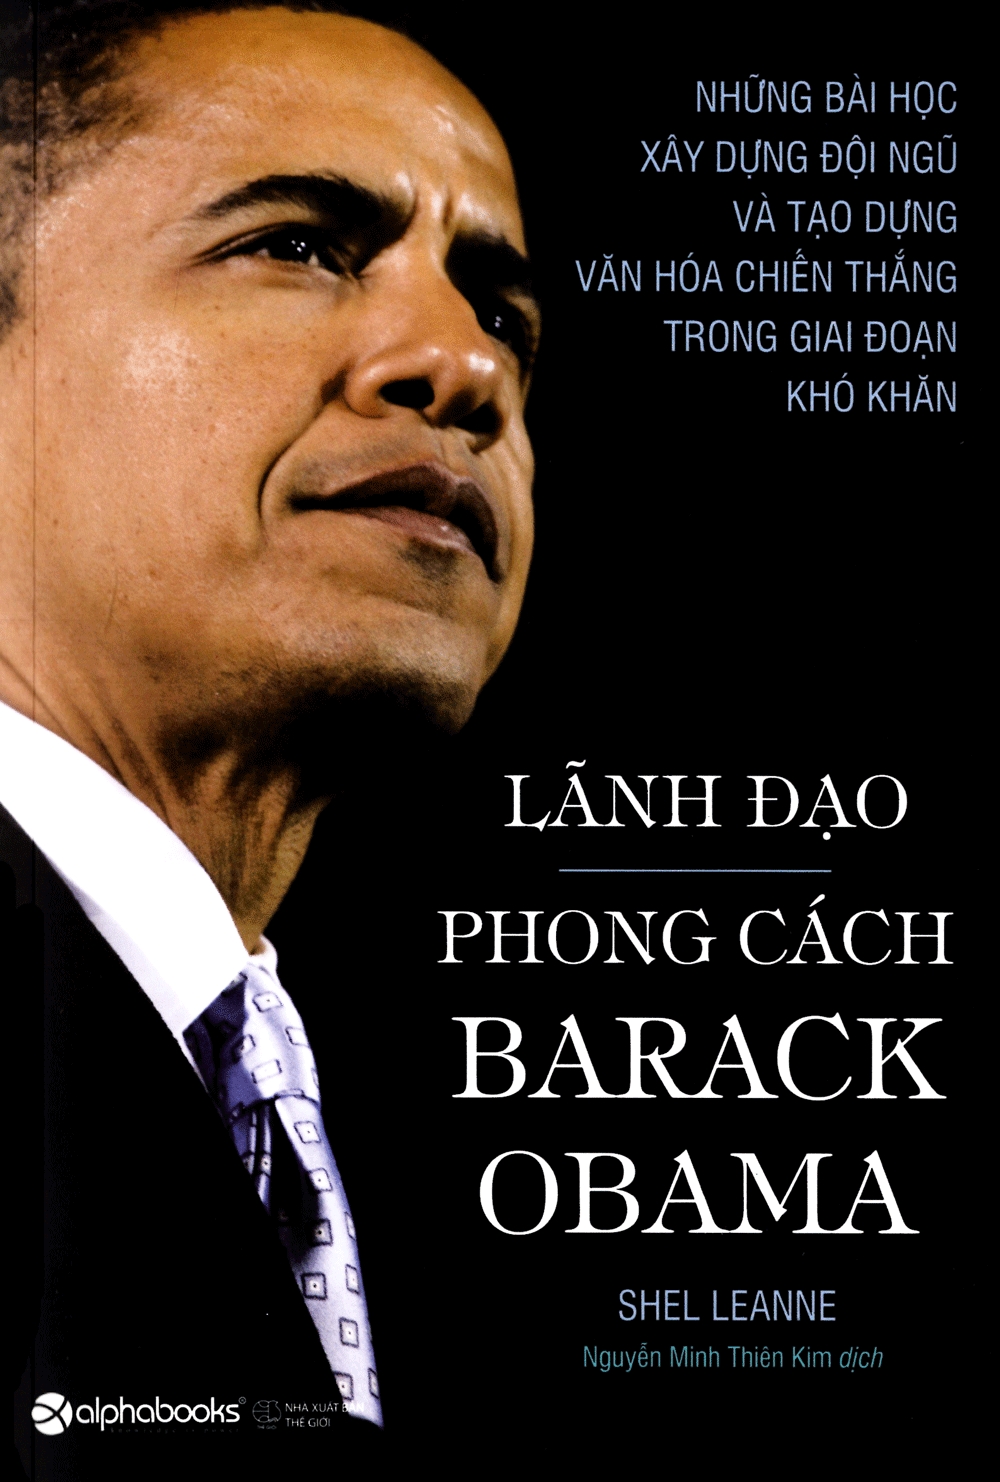 Lãnh Đạo Phong Cách Barack Obama cover